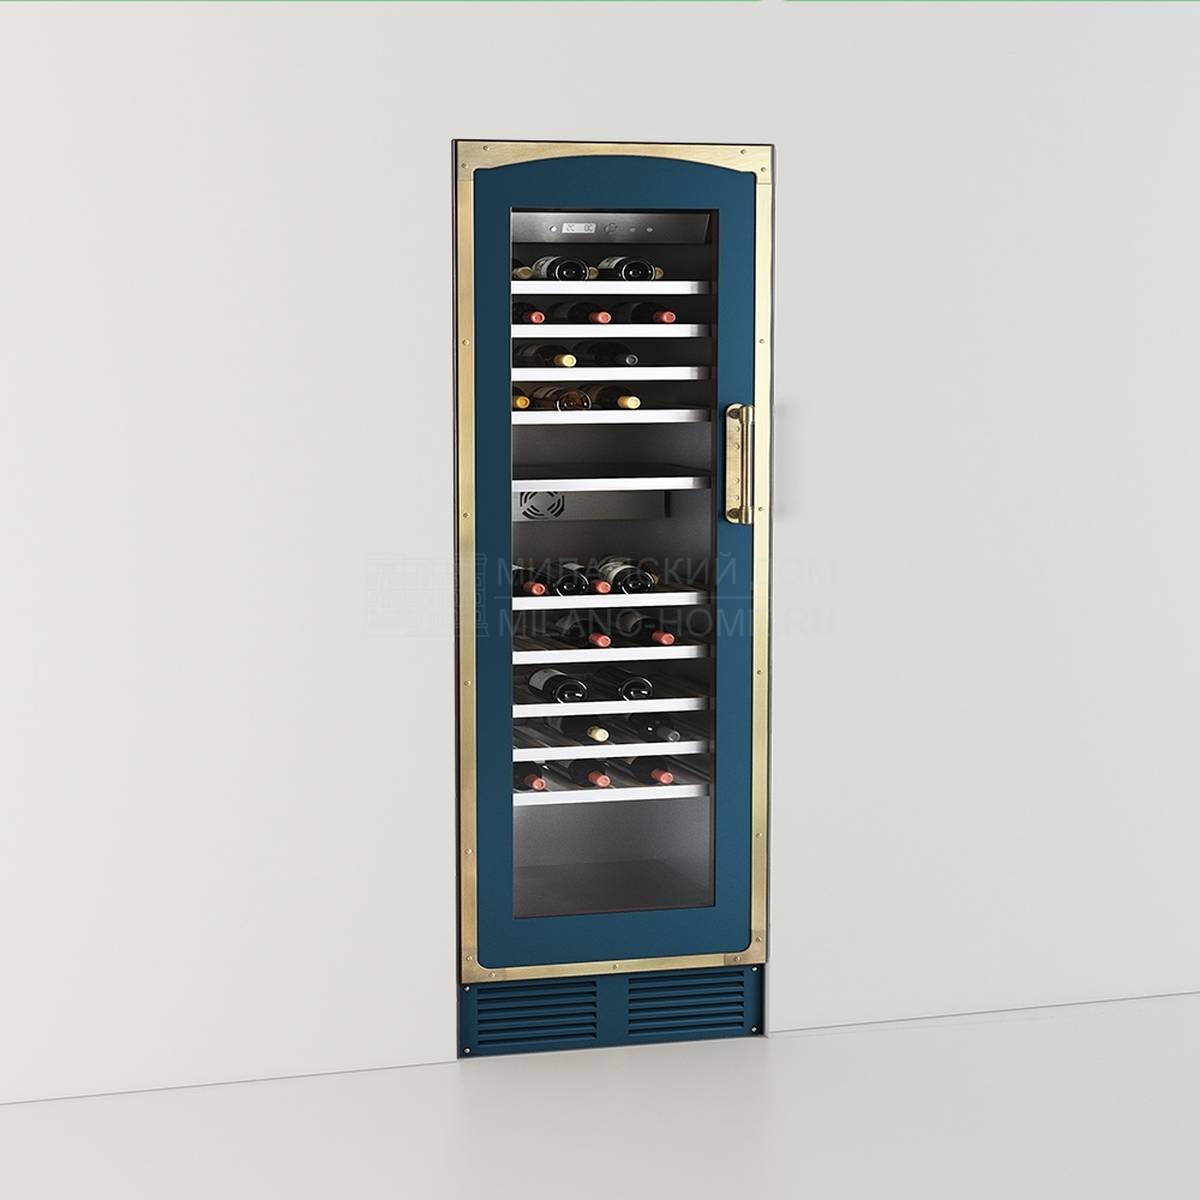 Мультитемпературный винный шкаф Multi-temperature wine cabinet 60 CM professional series из Италии фабрики OFFICINE GULLO